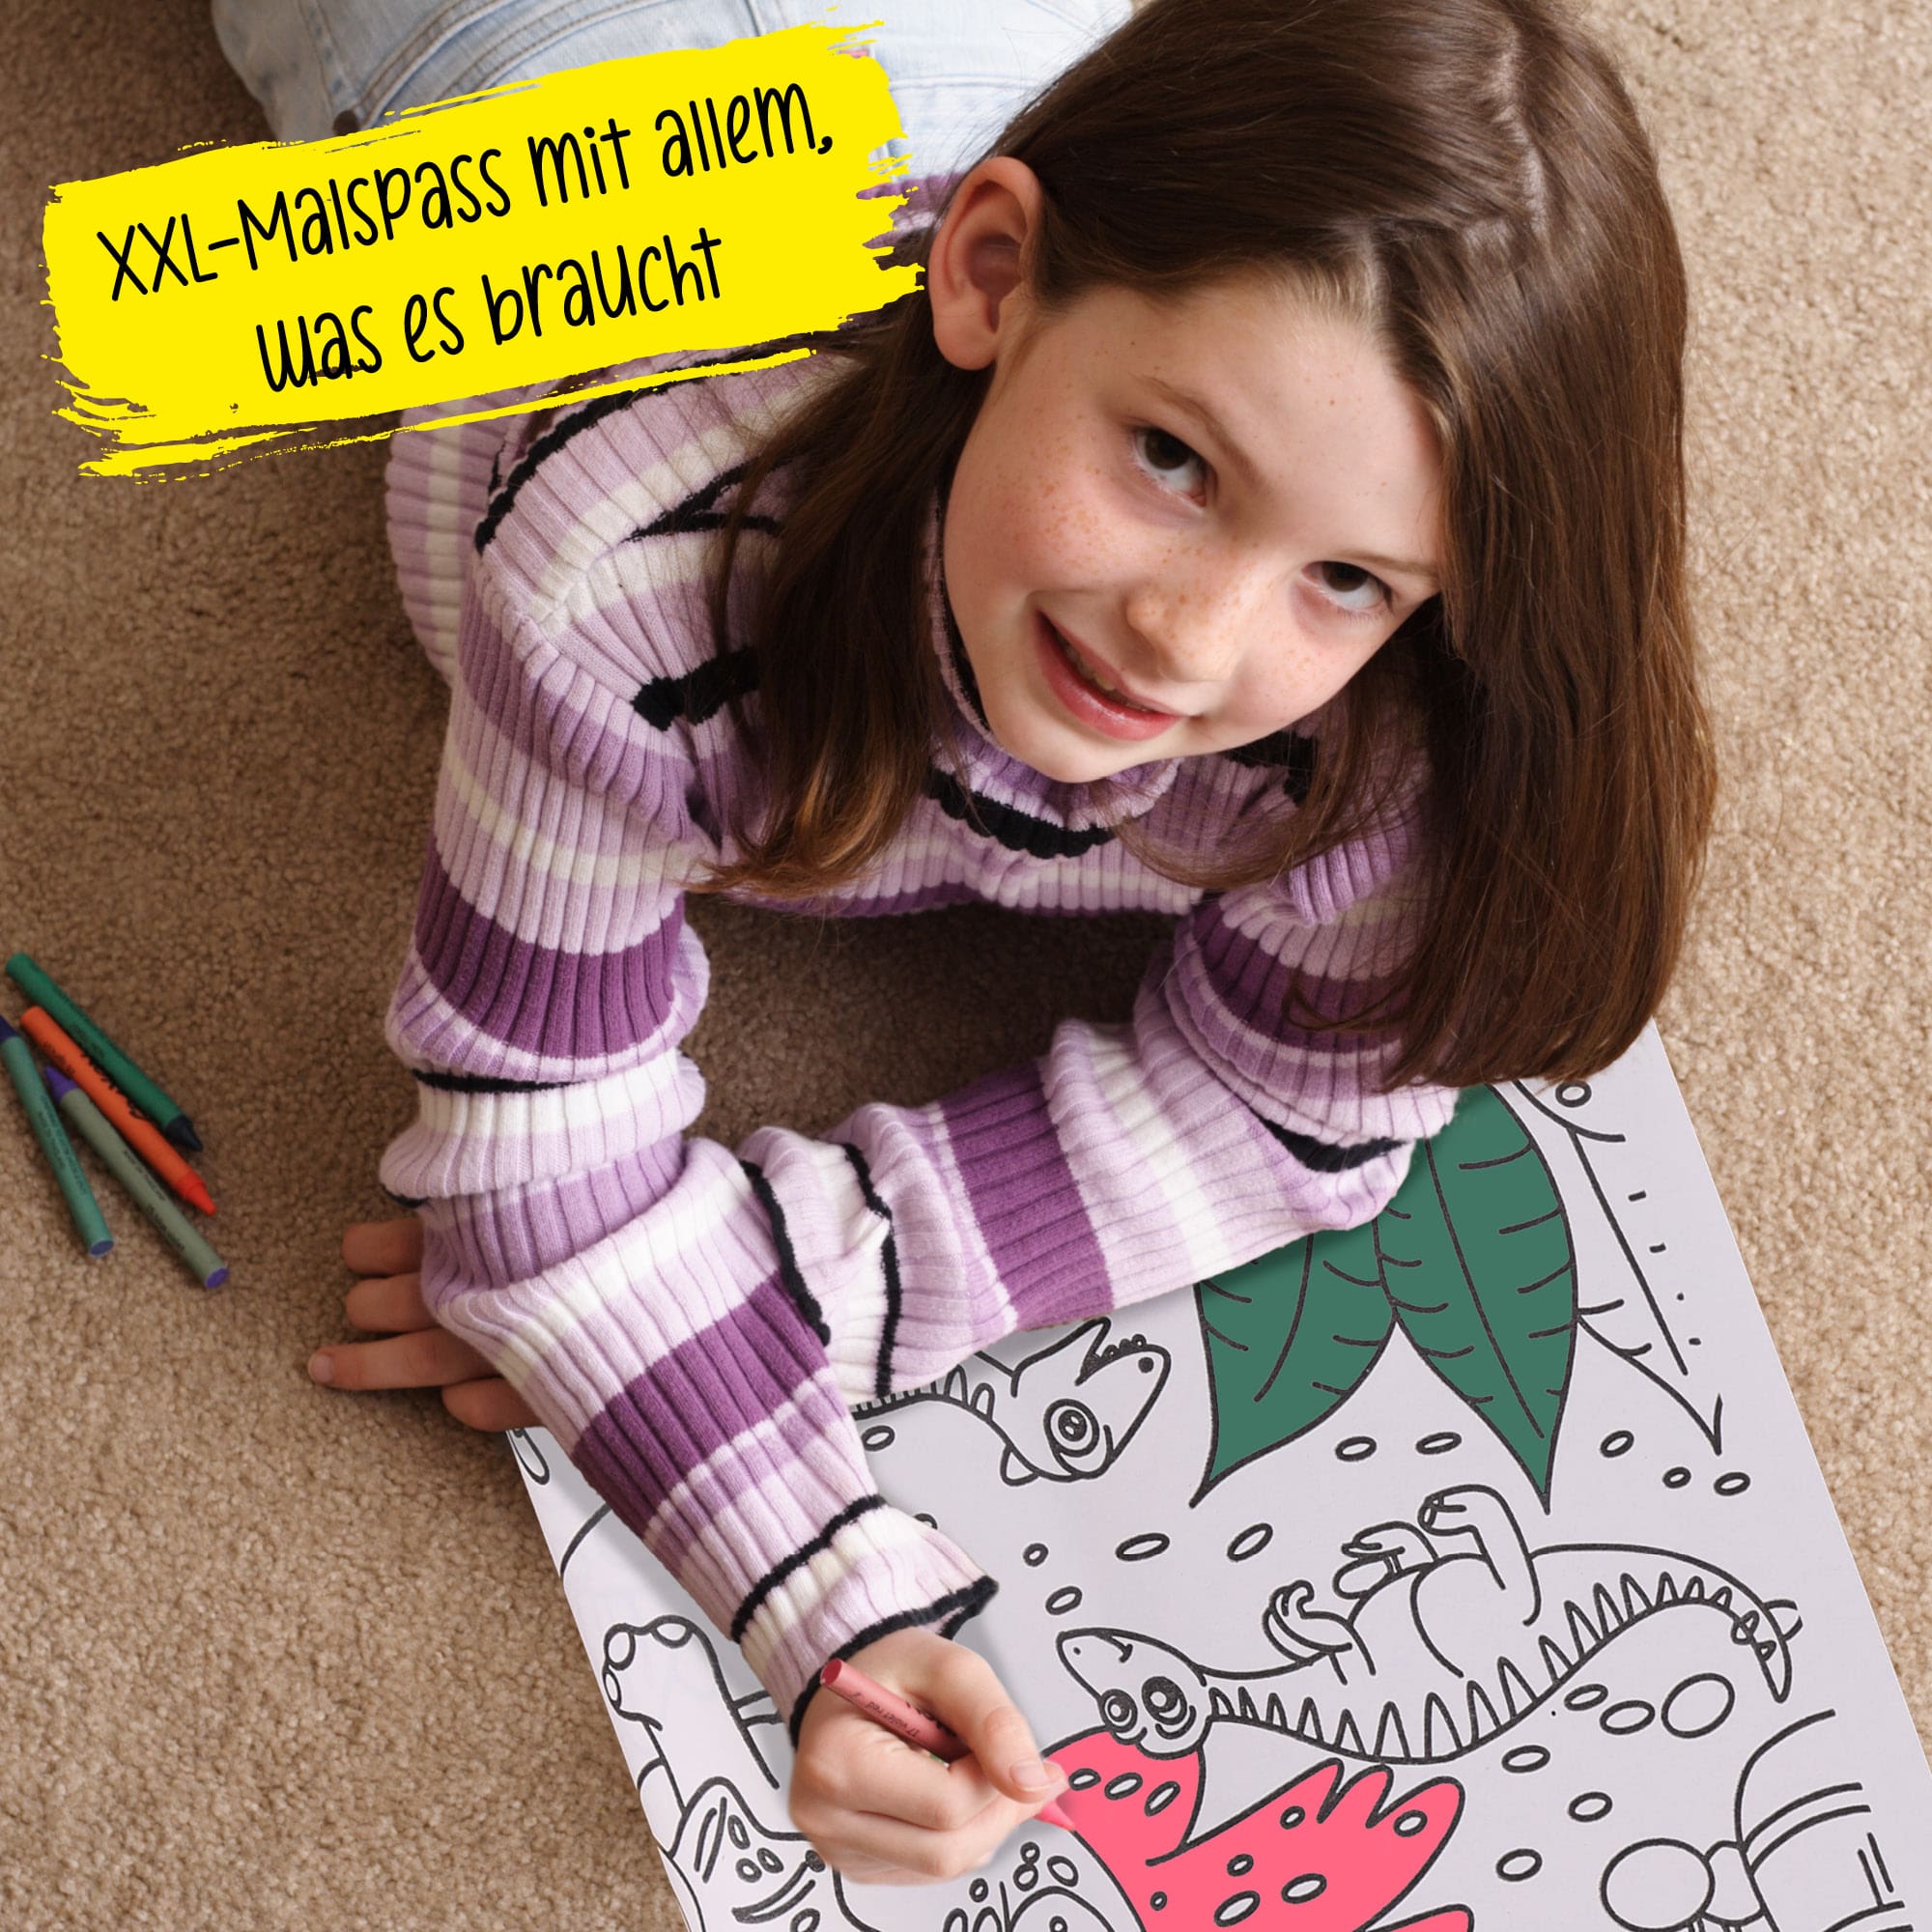 Buntstifte & Malrolle für Kinder zum Ausmalen, 30 x 200 cm, Selbstklebende Zeichenrolle mit Dino-Motiv